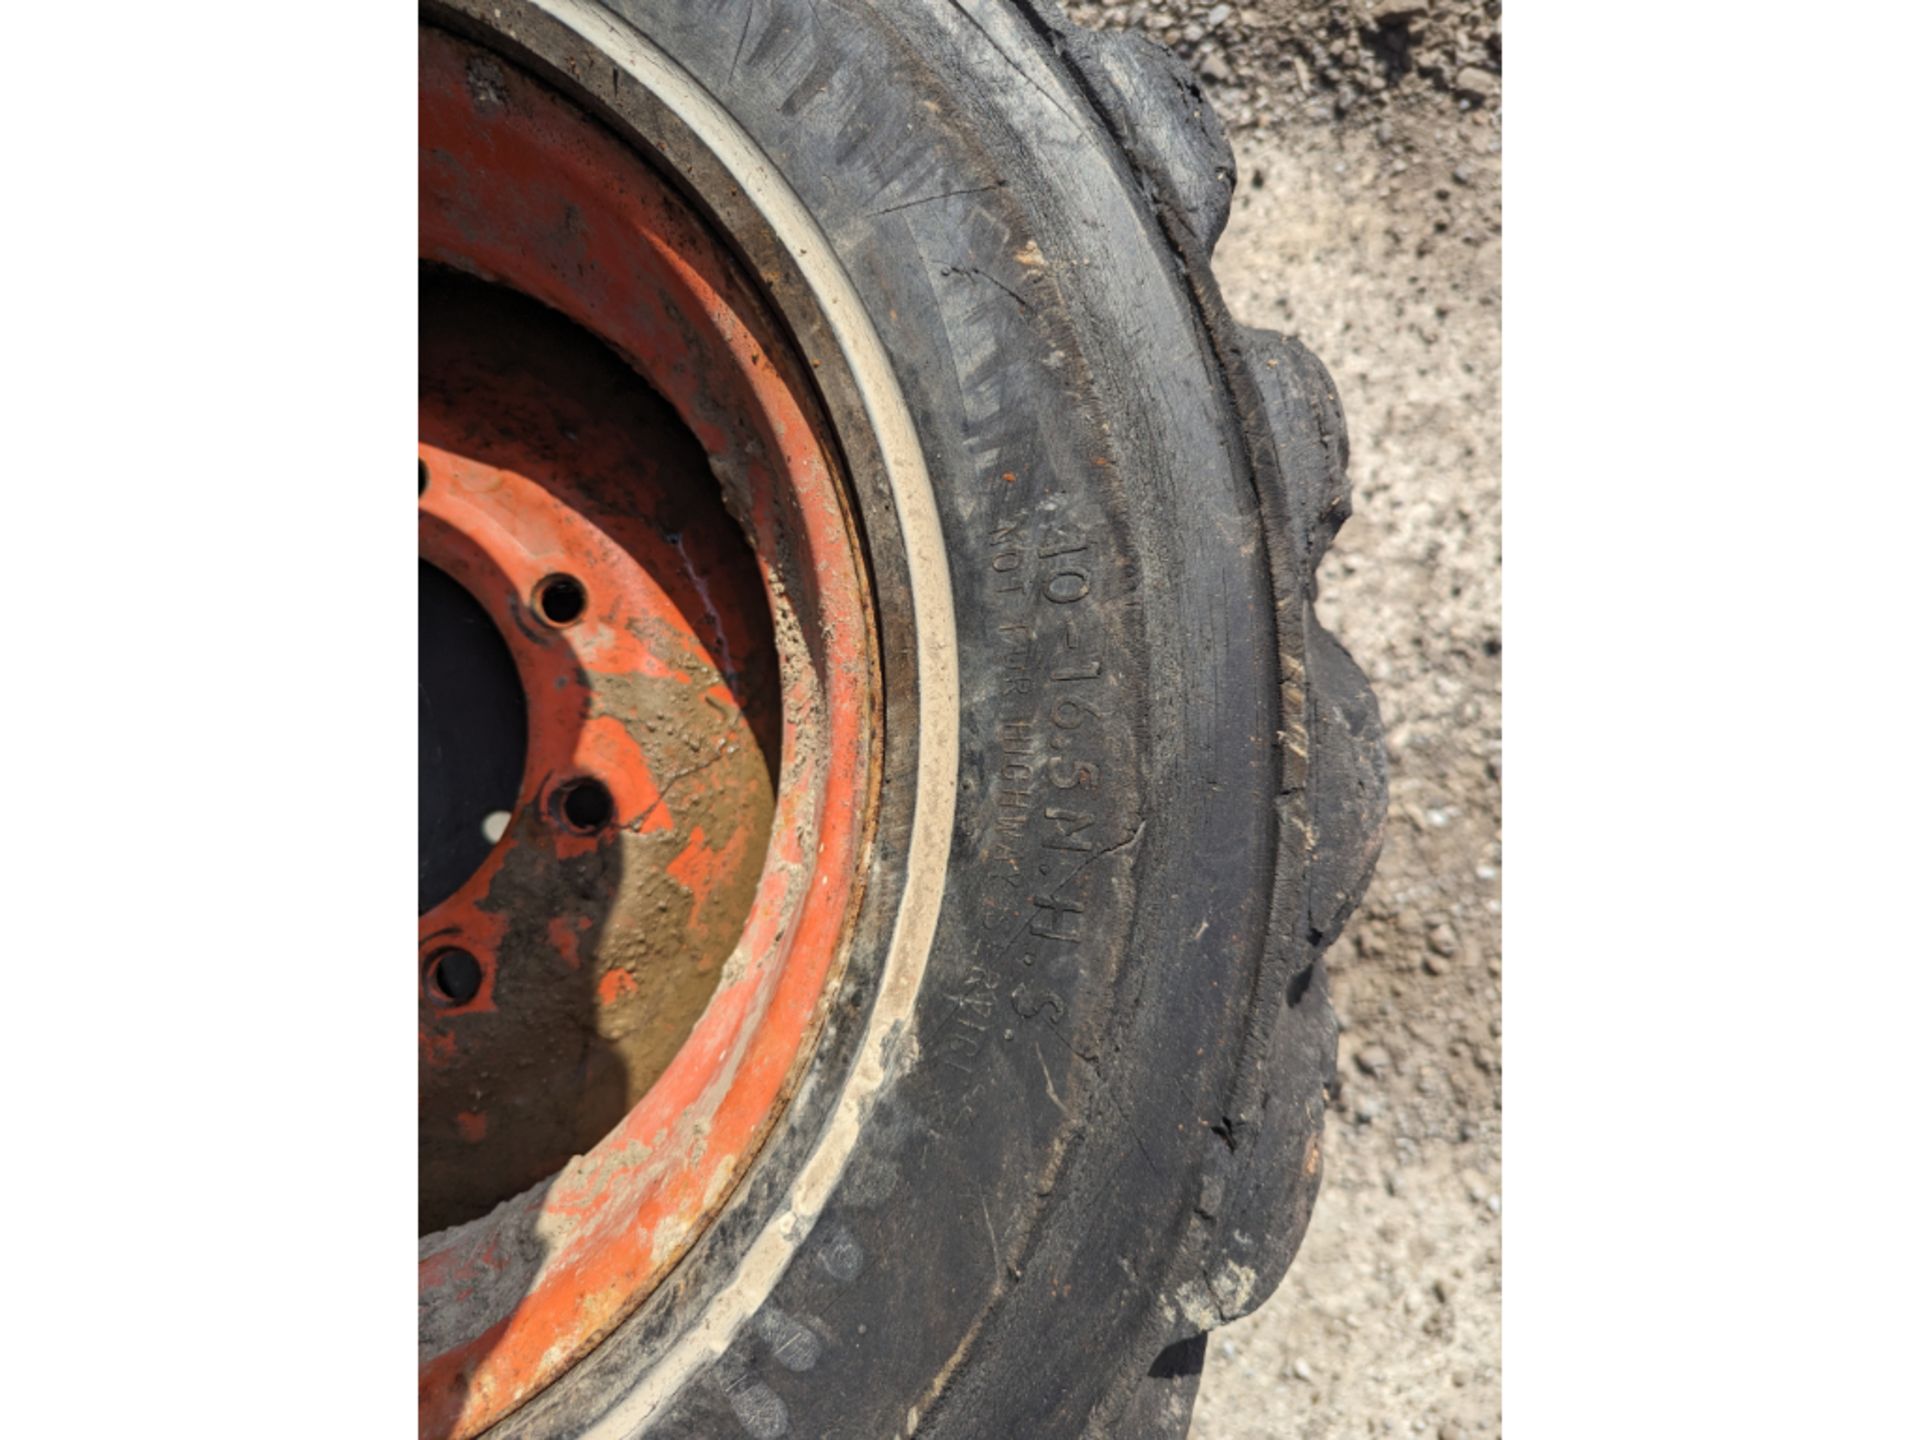 4 10-16.5 Skid Steer Tires & Rims - Image 7 of 7